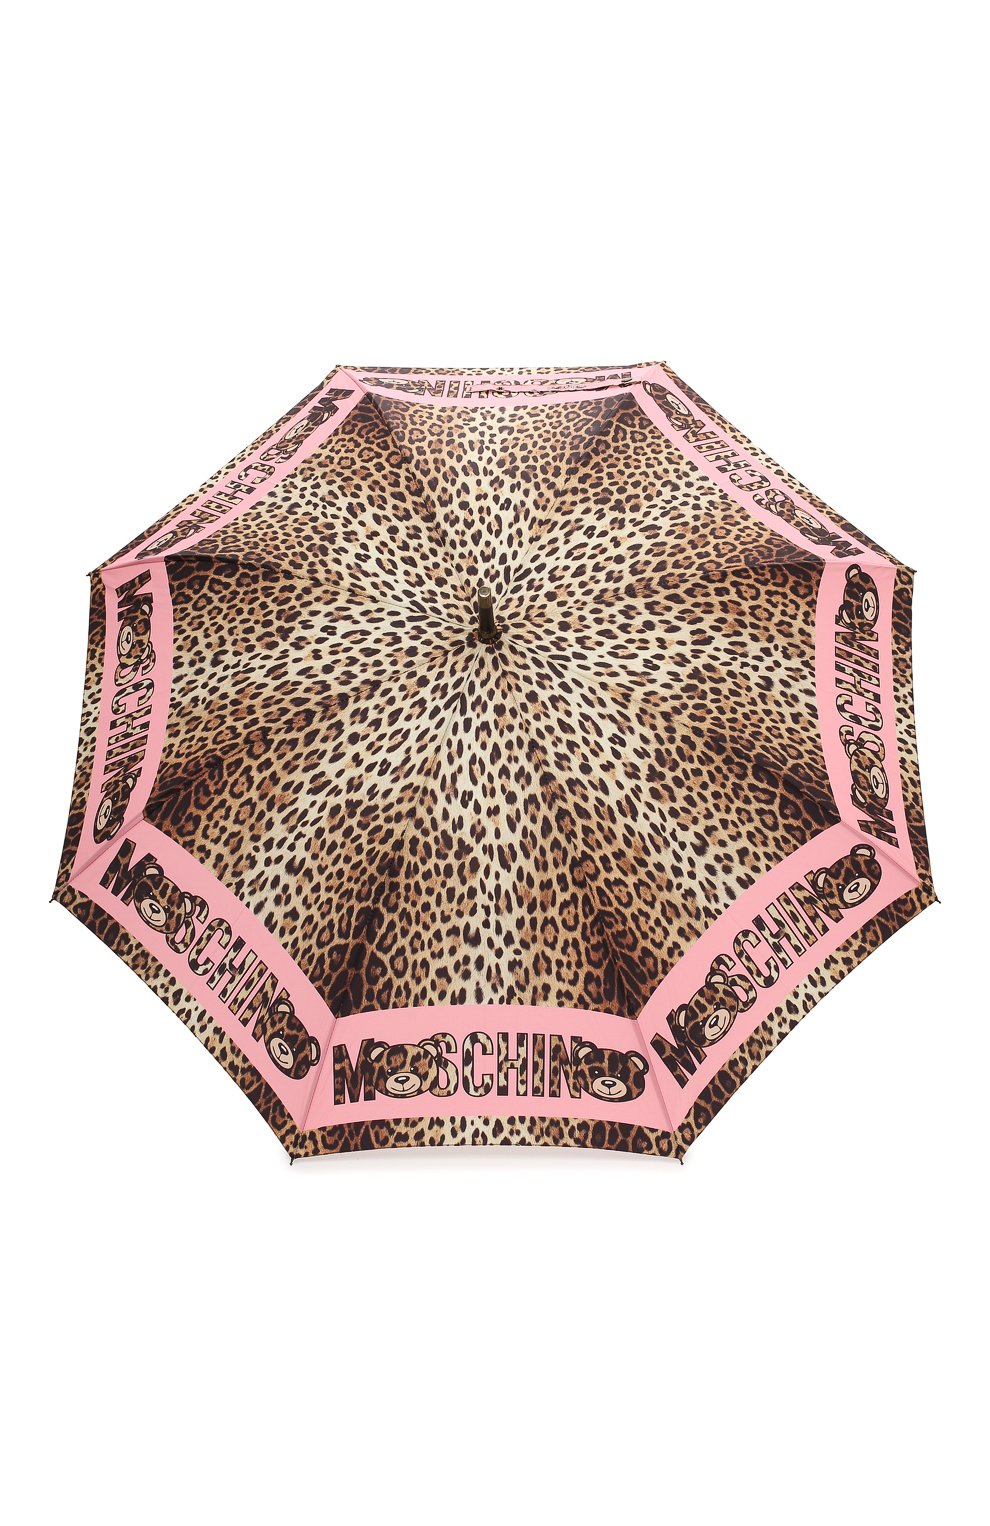 Женский зонт-трость MOSCHINO леопардового цвета, арт. 8138-63AUT0 | Фото 1 (Материал: Текстиль, Синтетический материал, Металл)